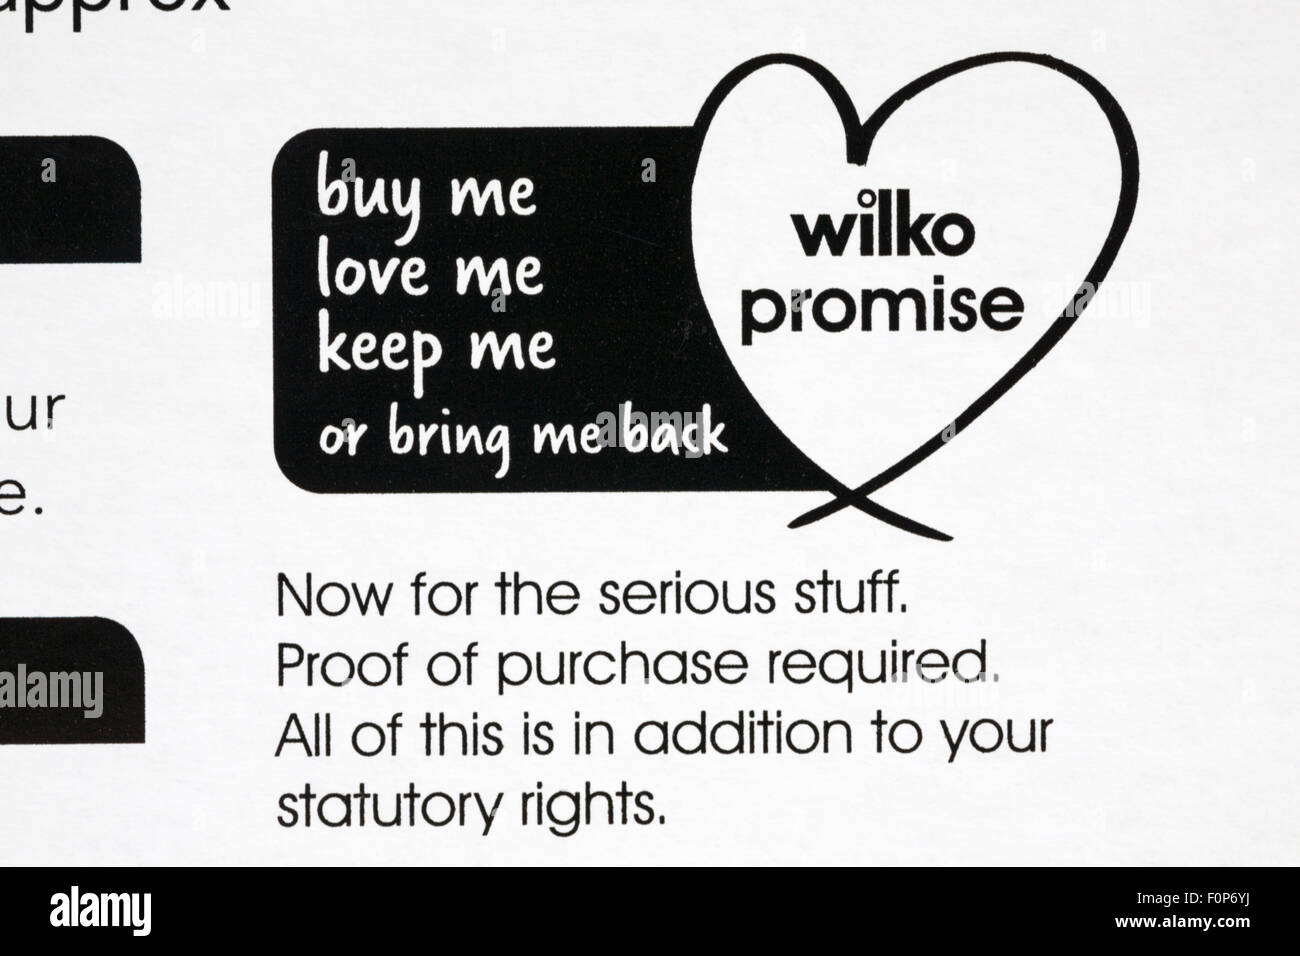 Wilko Versprechen - kaufen, die mich lieben, mich bitte informieren Sie mich oder bring mich zurück Stockfoto